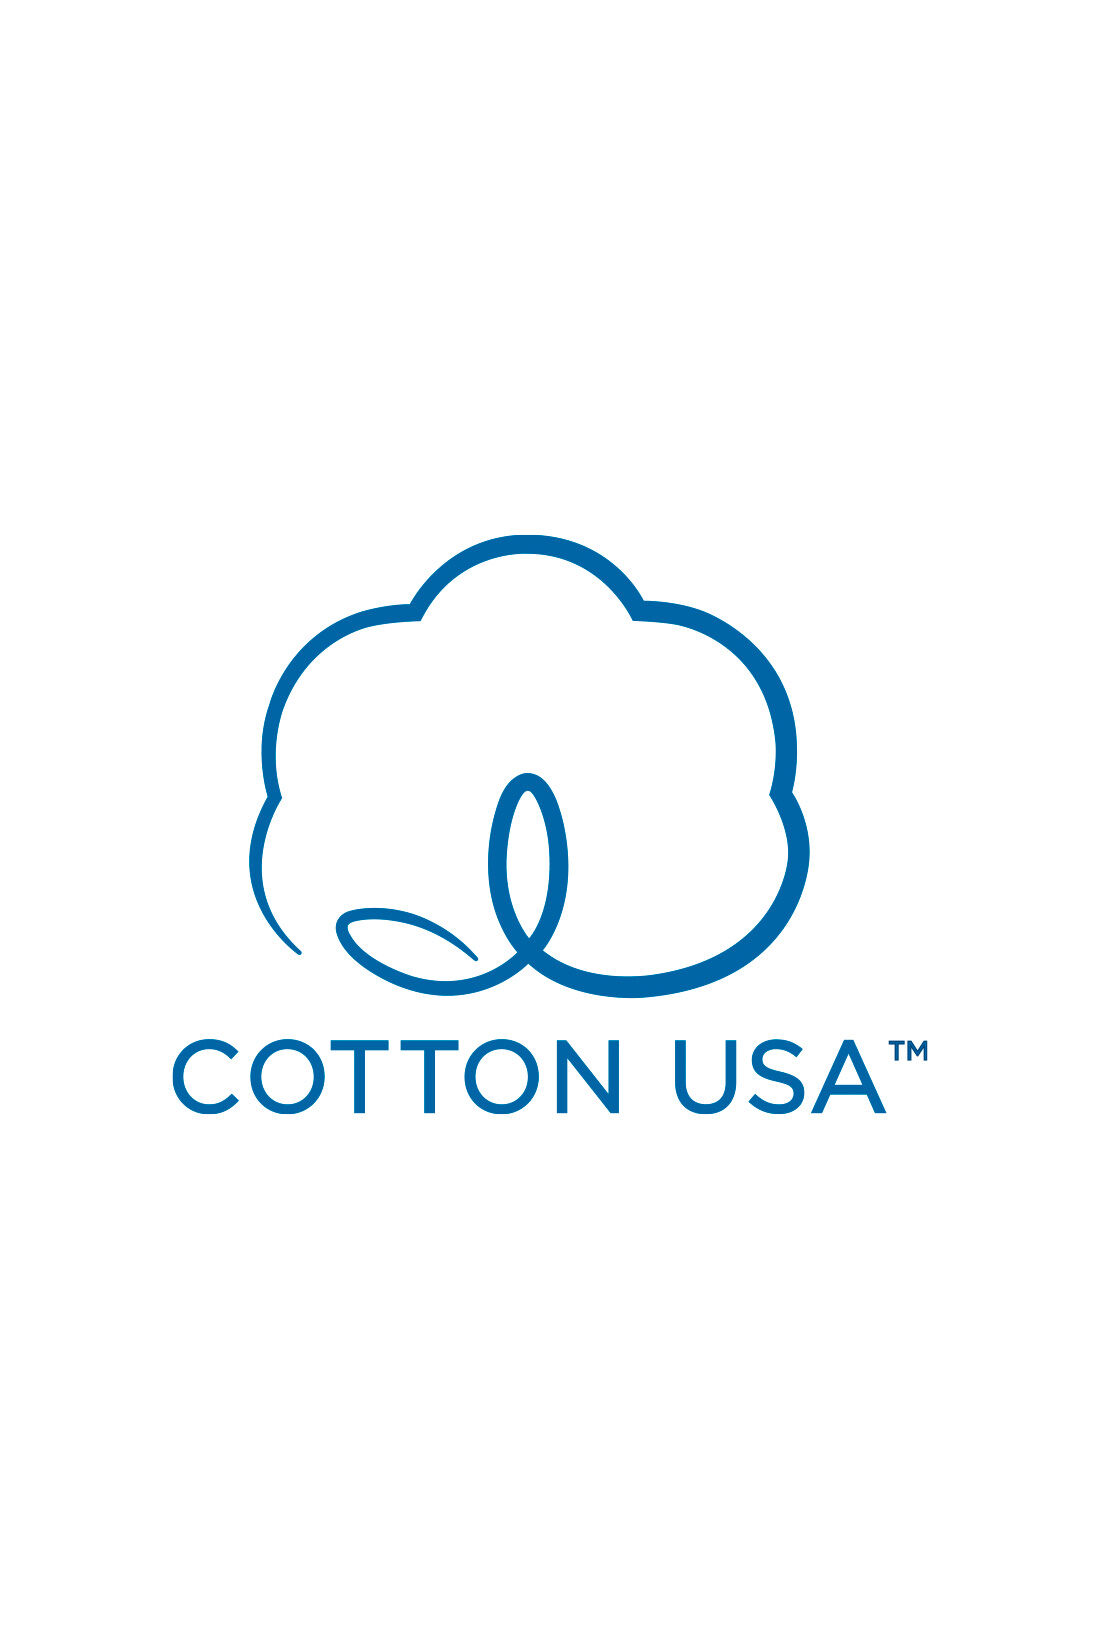 MEDE19F|MEDE19F　USAコットン　グラフ誌LIFEフォトプリントTシャツ〈チャコールグレー〉|【USAコットン】アメリカ綿を使用した優秀な品質の商品にのみ使用を認められた、COTTON USA（TM）のマーク付き。持続可能な生産を目指し、環境に配慮した農法で栽培された綿花を使用。働き手の適正賃金、安全な作業環境の徹底など生産者にもやさしいサステナブルなコットンです。